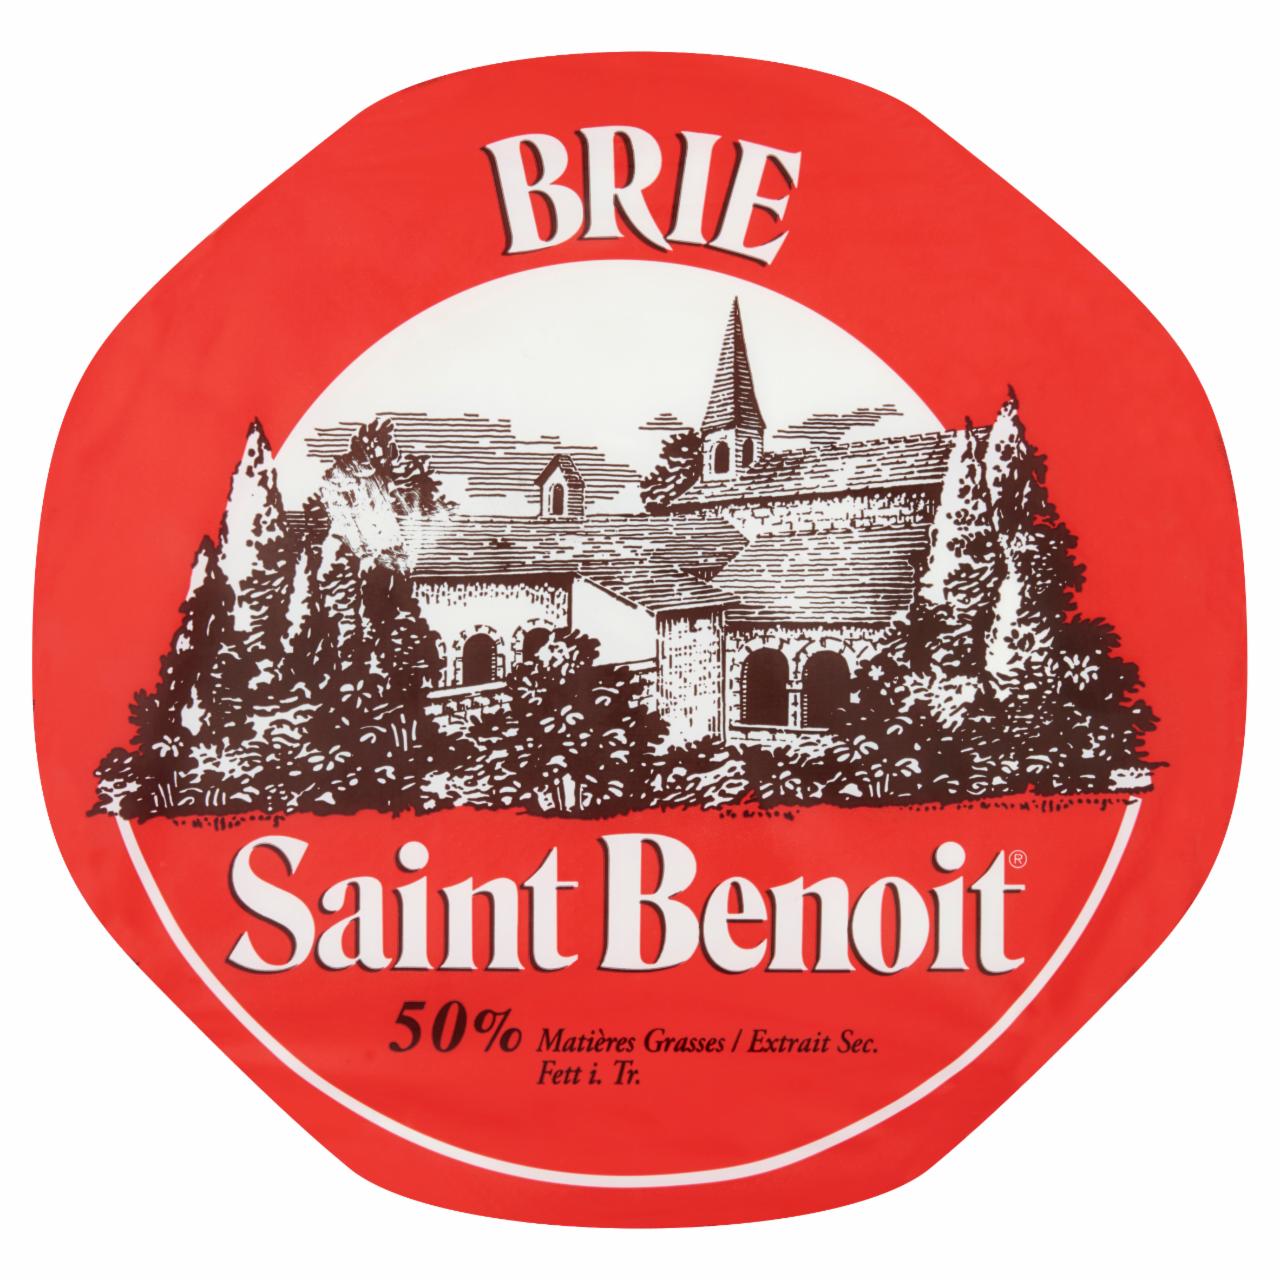 Képek - Saint Benoit Brie zsíros, fehér nemespenésszel érő lágy sajt